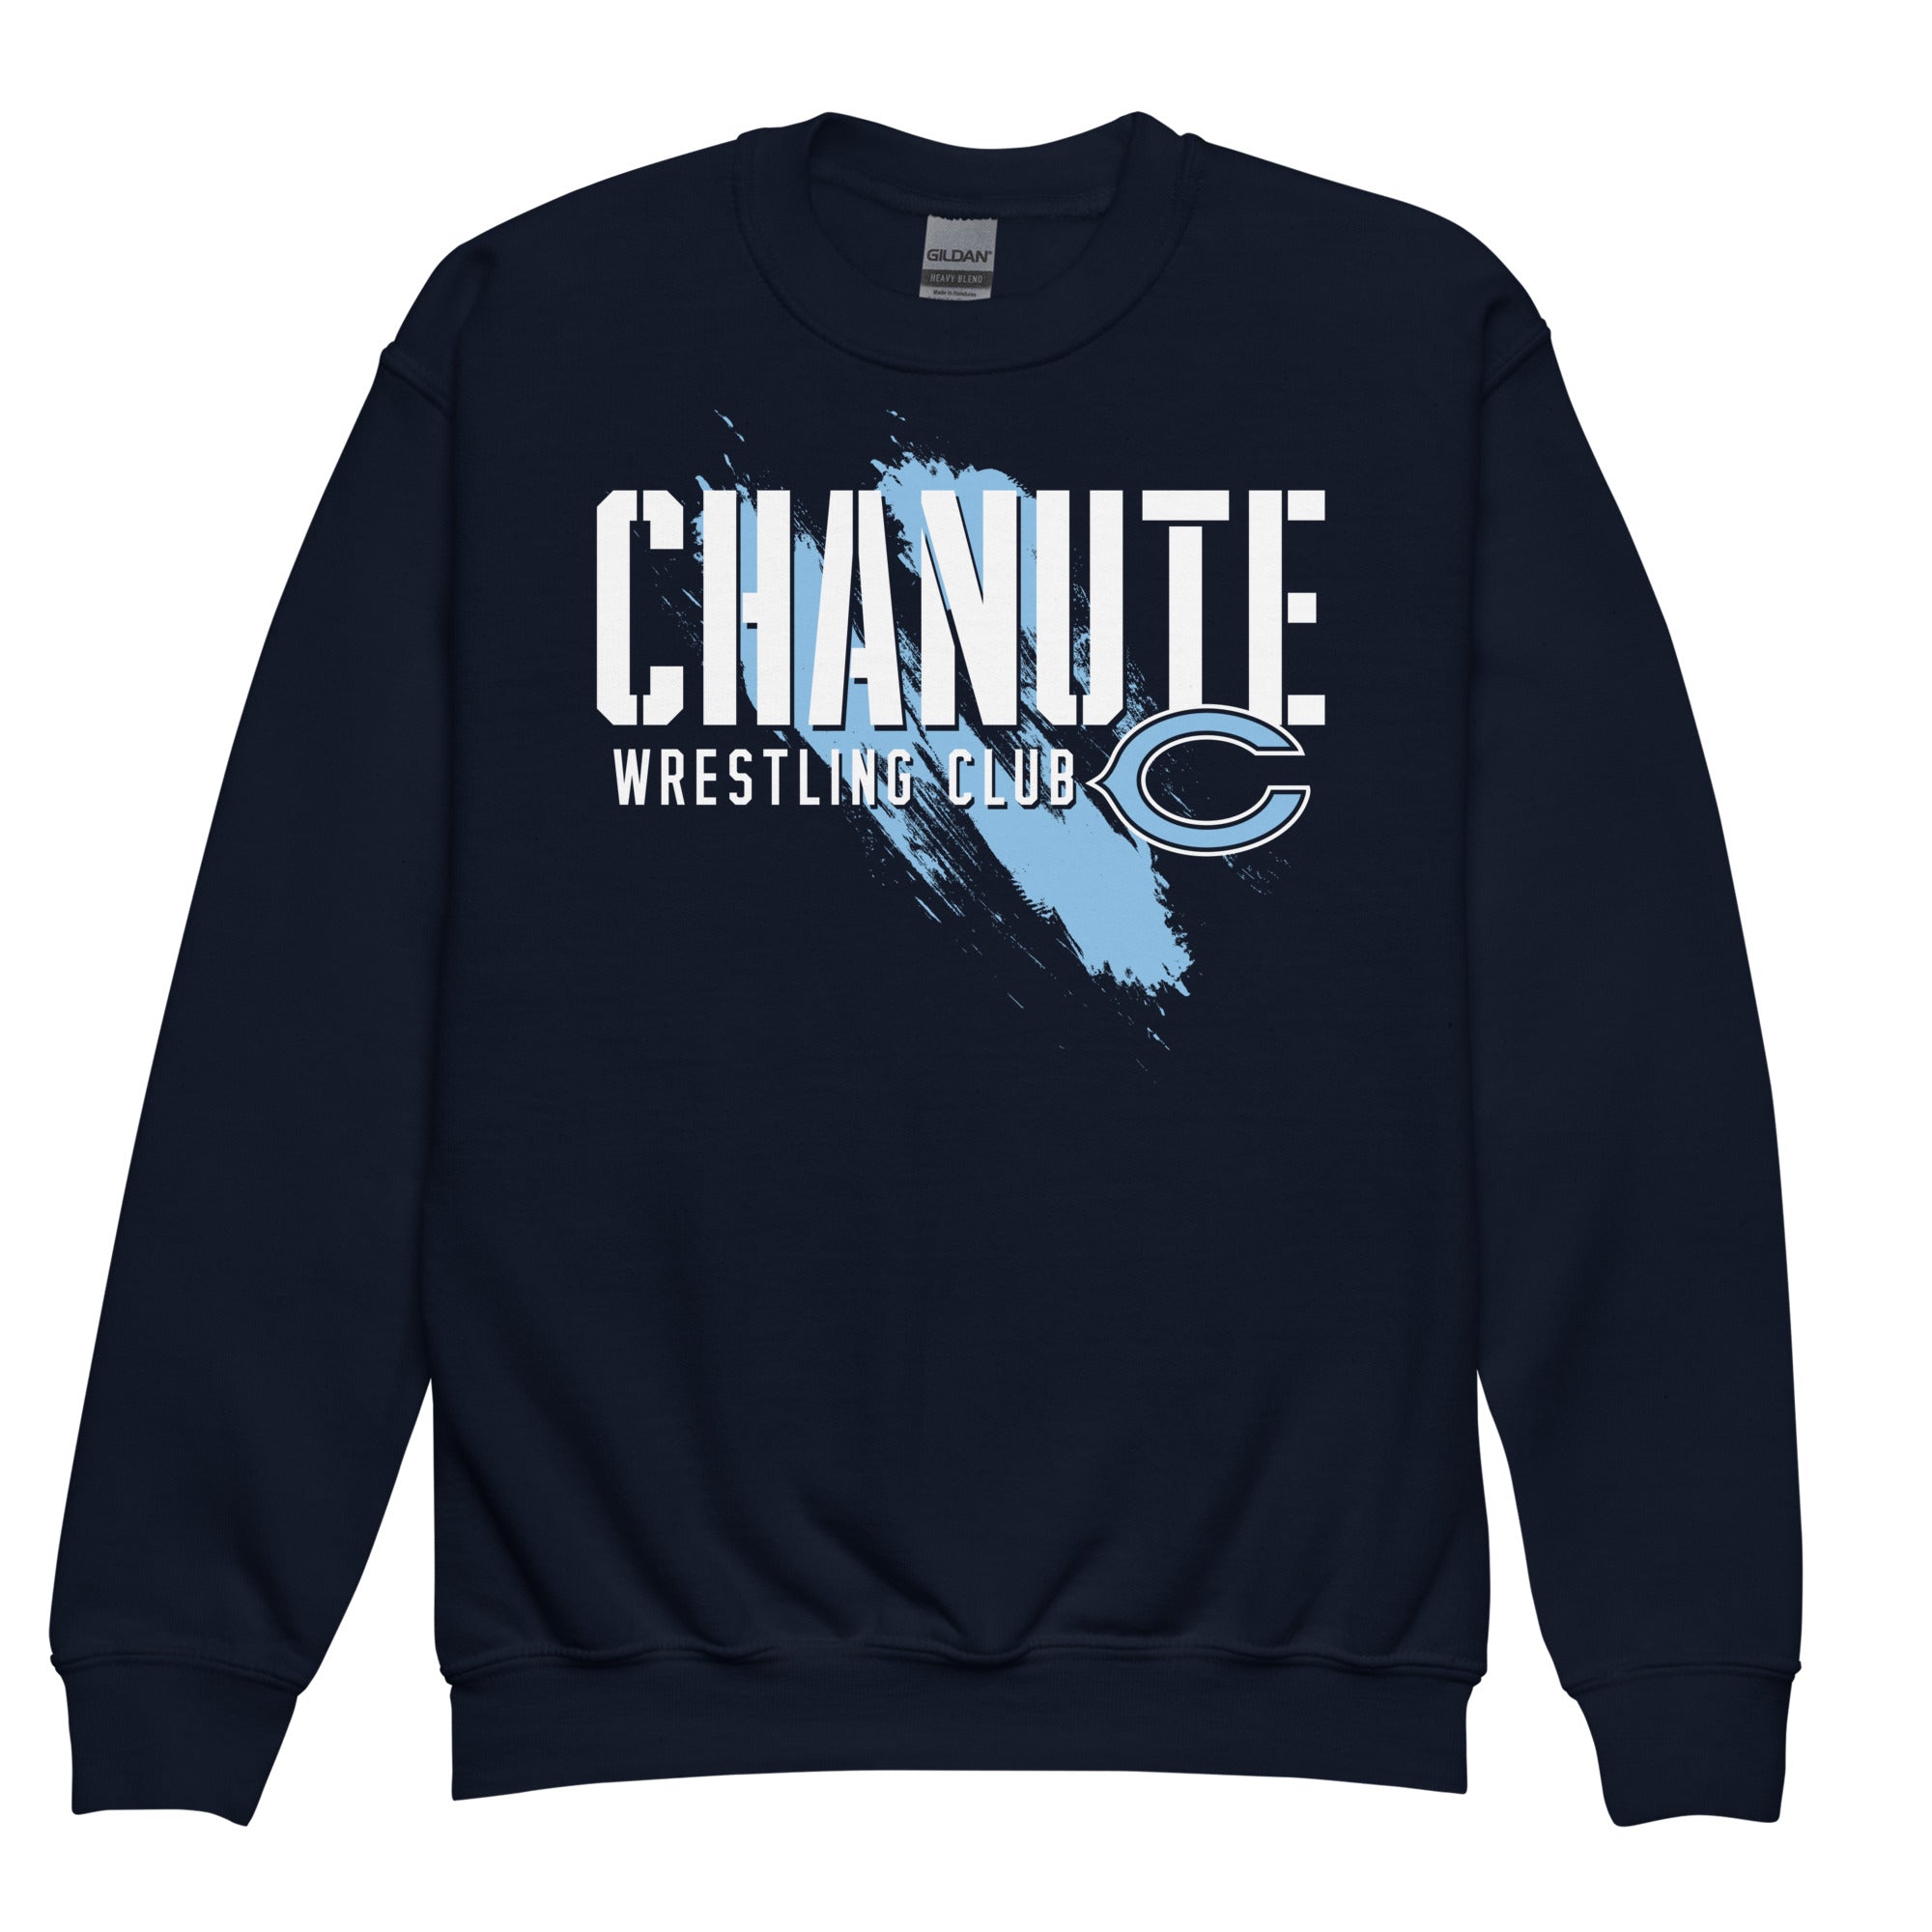 Chanute Wrestling Club Youth Crew Neck Sweatshirt